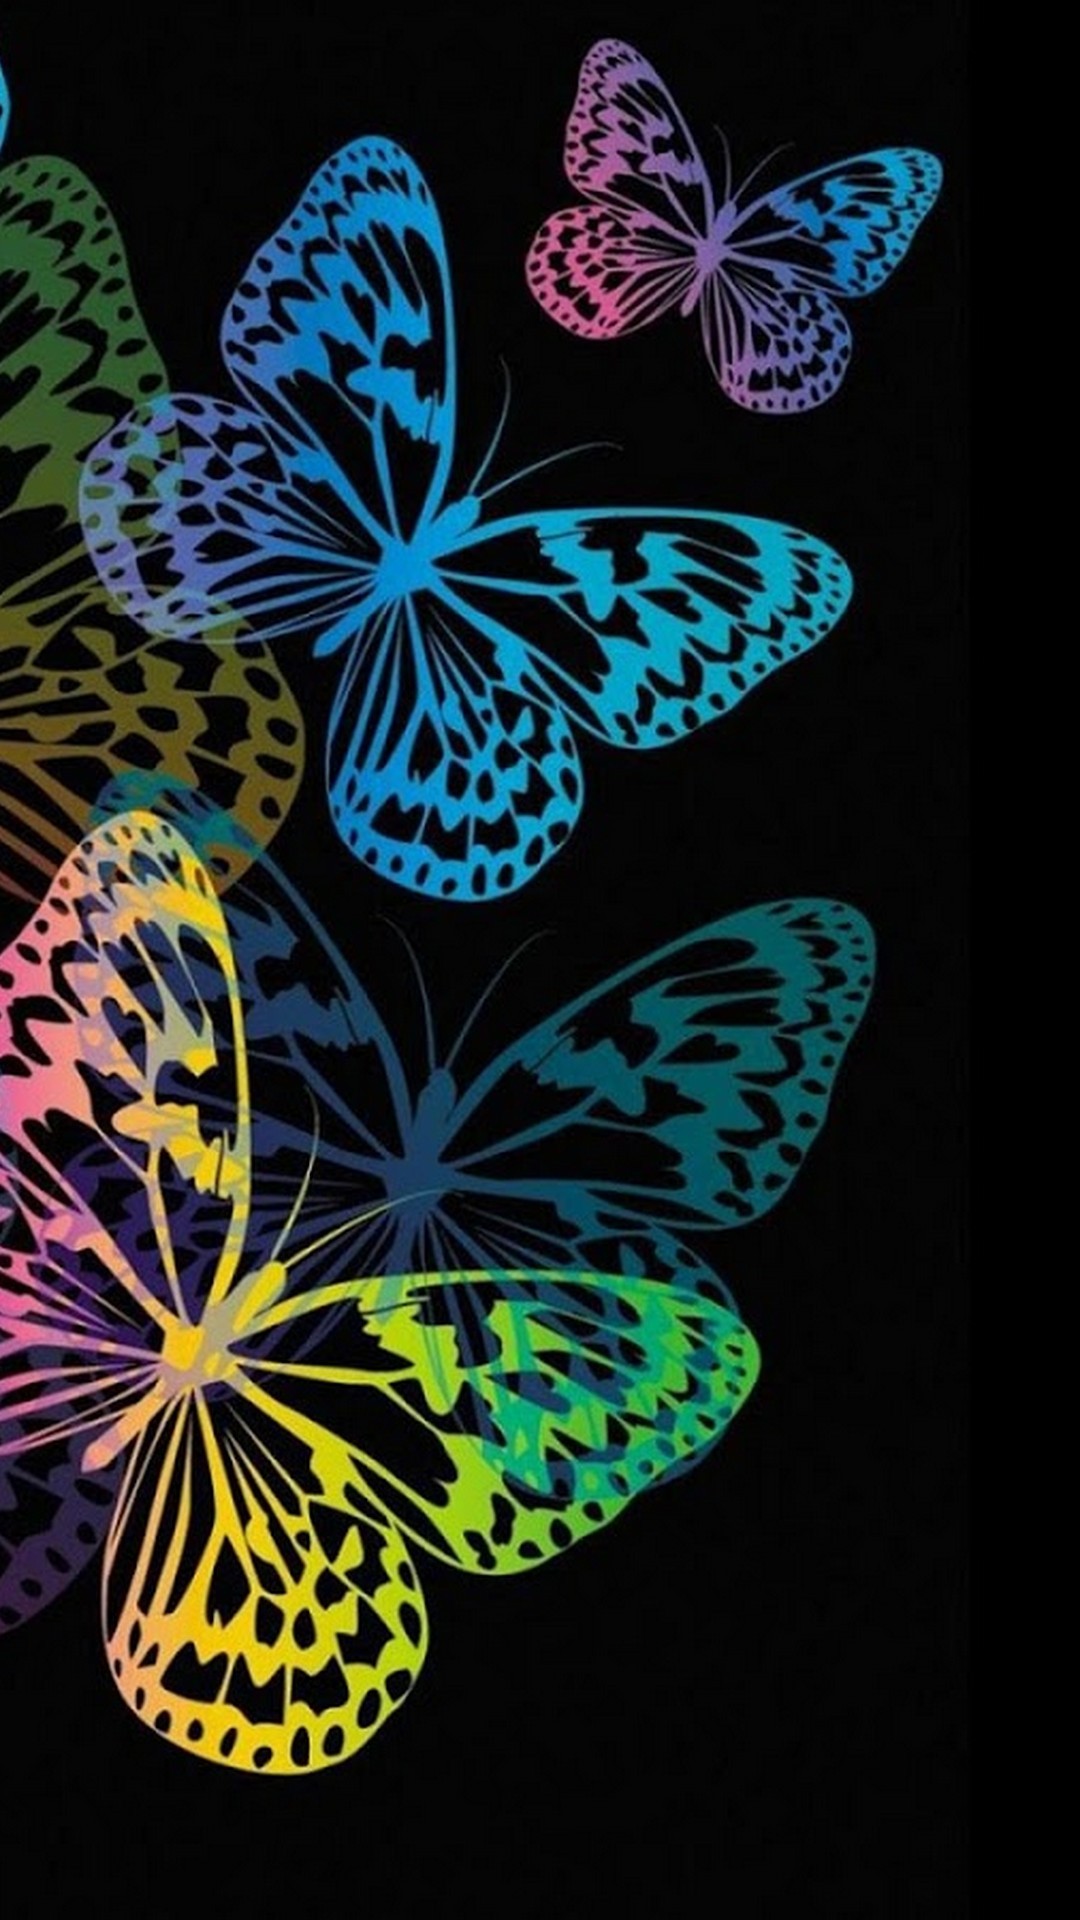 Butterfly Wallpaper For Mobile Android - Fondo De Pantalla De Mariposas En Movimiento - HD Wallpaper 